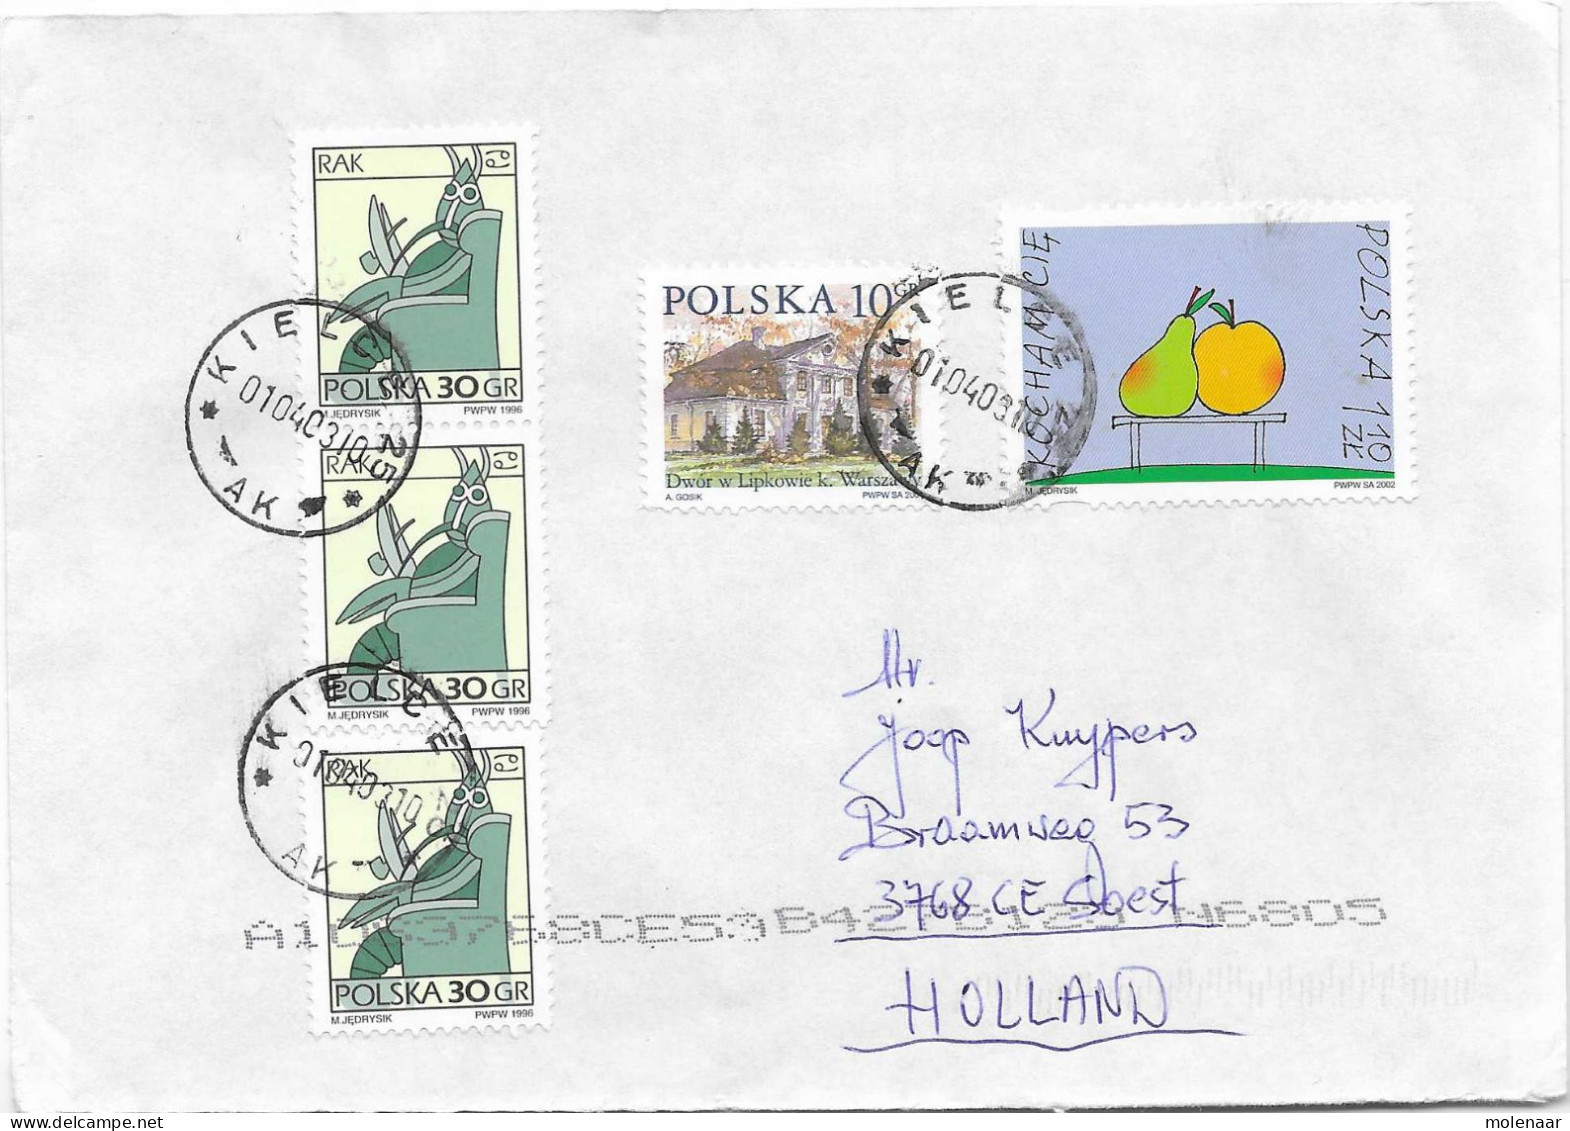 Postzegels > Europa > Polen > 1944-.... Republiek > 2001-10 > Brief Uit 2002 Met 5 Postzegels (17131) - Covers & Documents